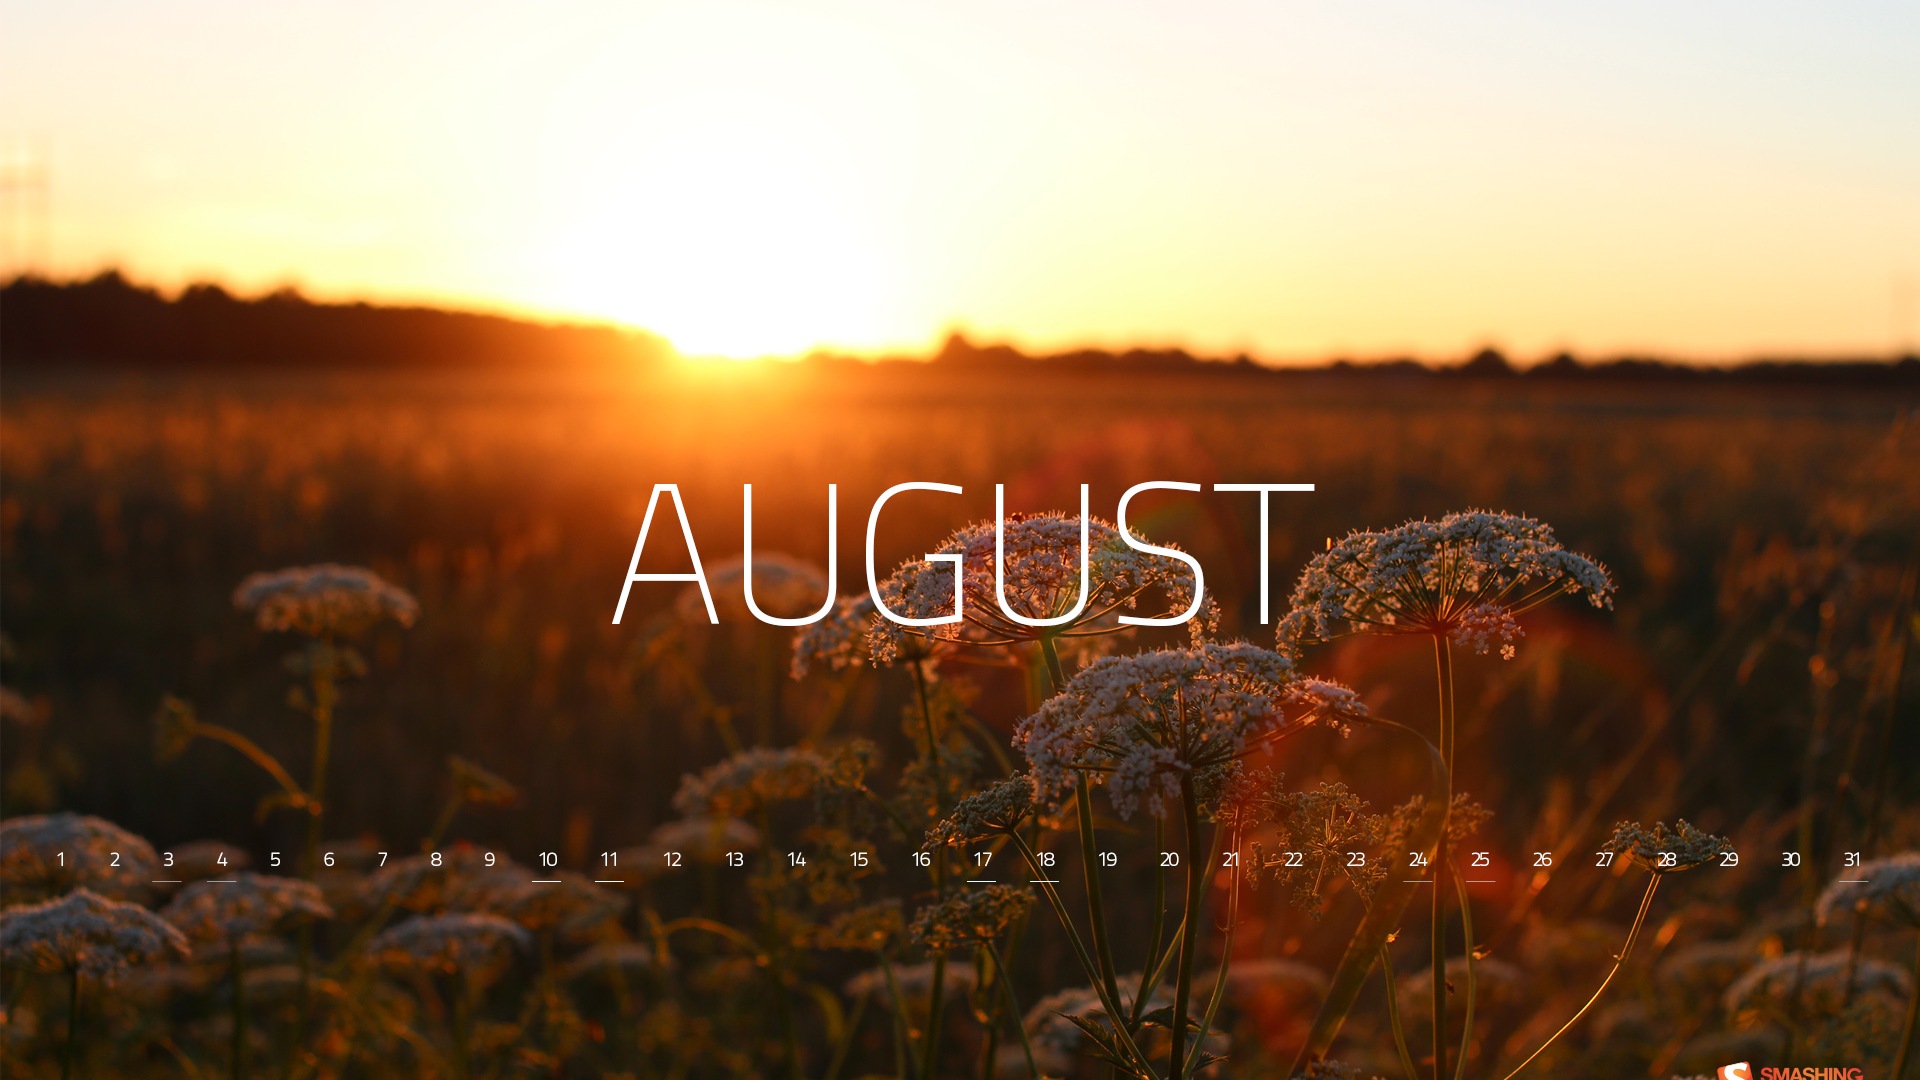 Август 2013 календарь обои (2) #2 - 1920x1080